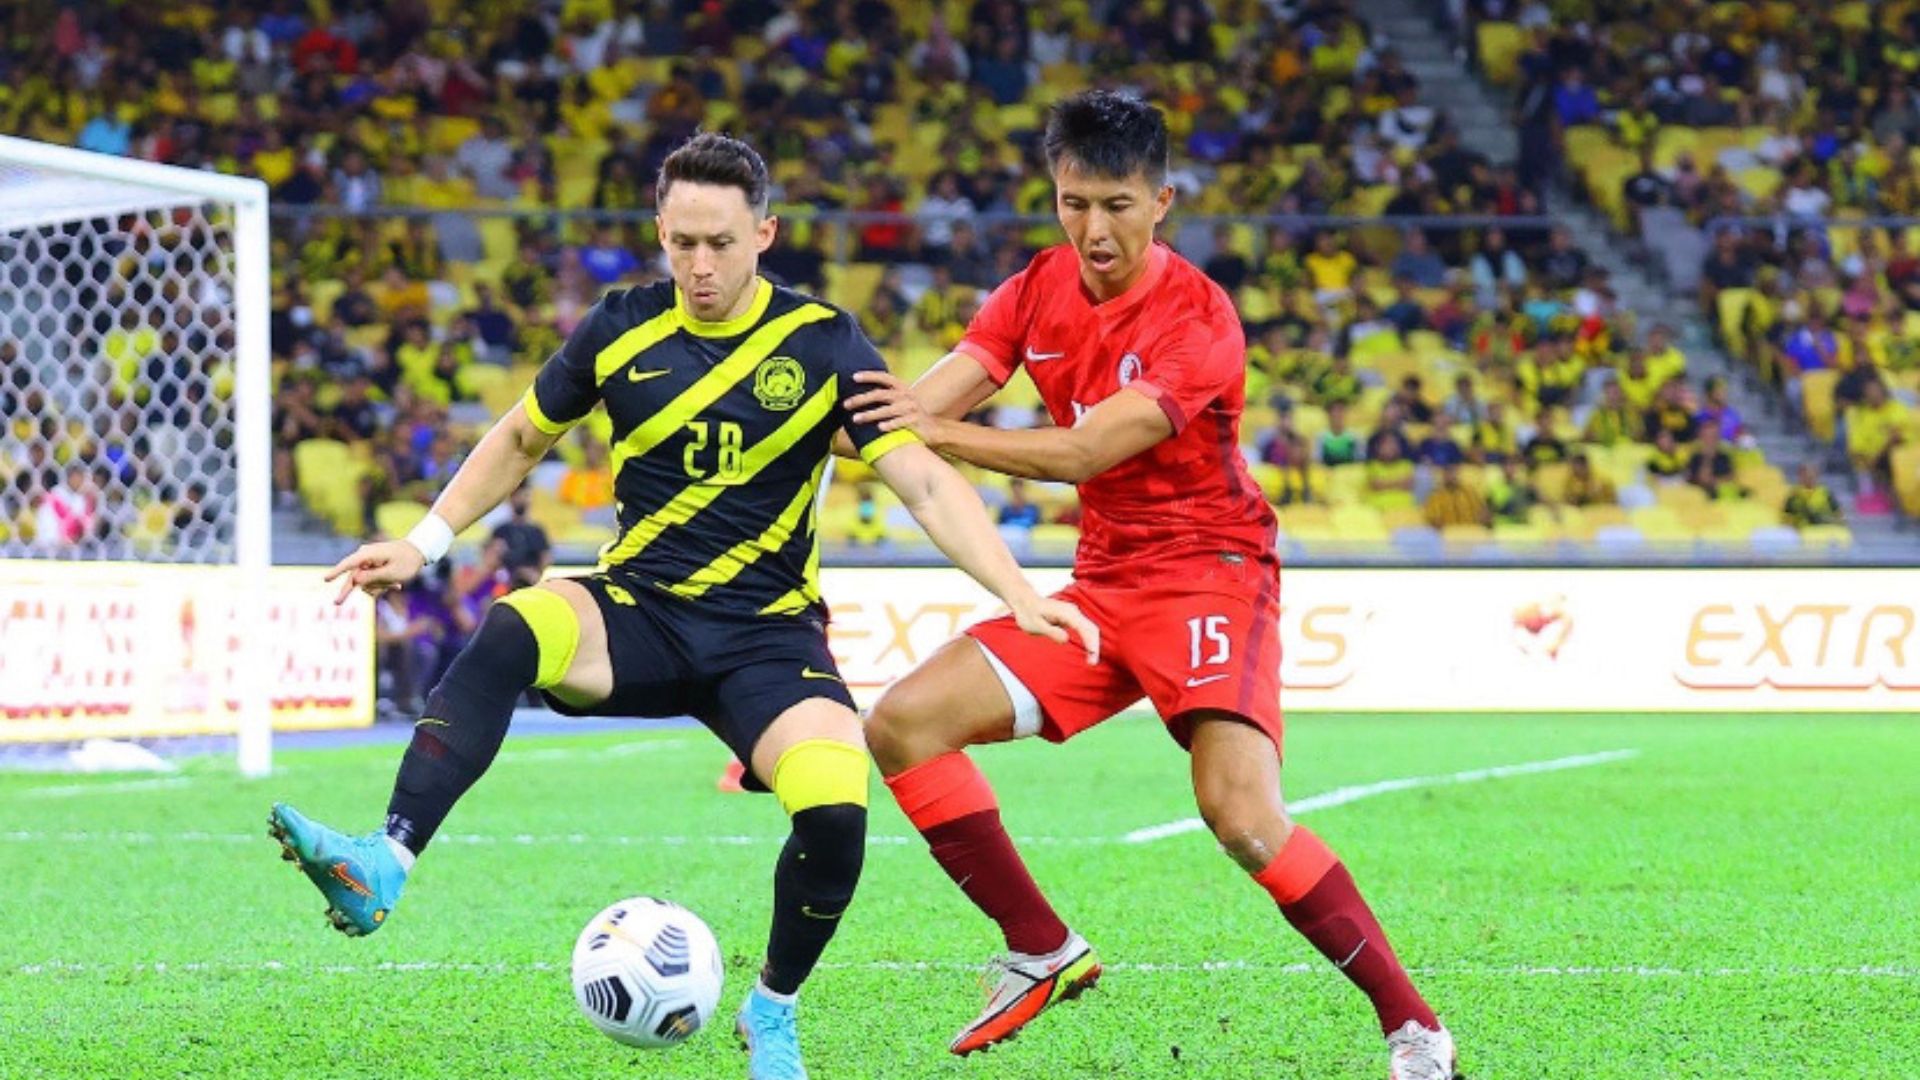 Darren Lok MAS 1 Penyokong Gembira Lihat Aksi Darren Lok Walaupun Tidak Jaringkan Gol